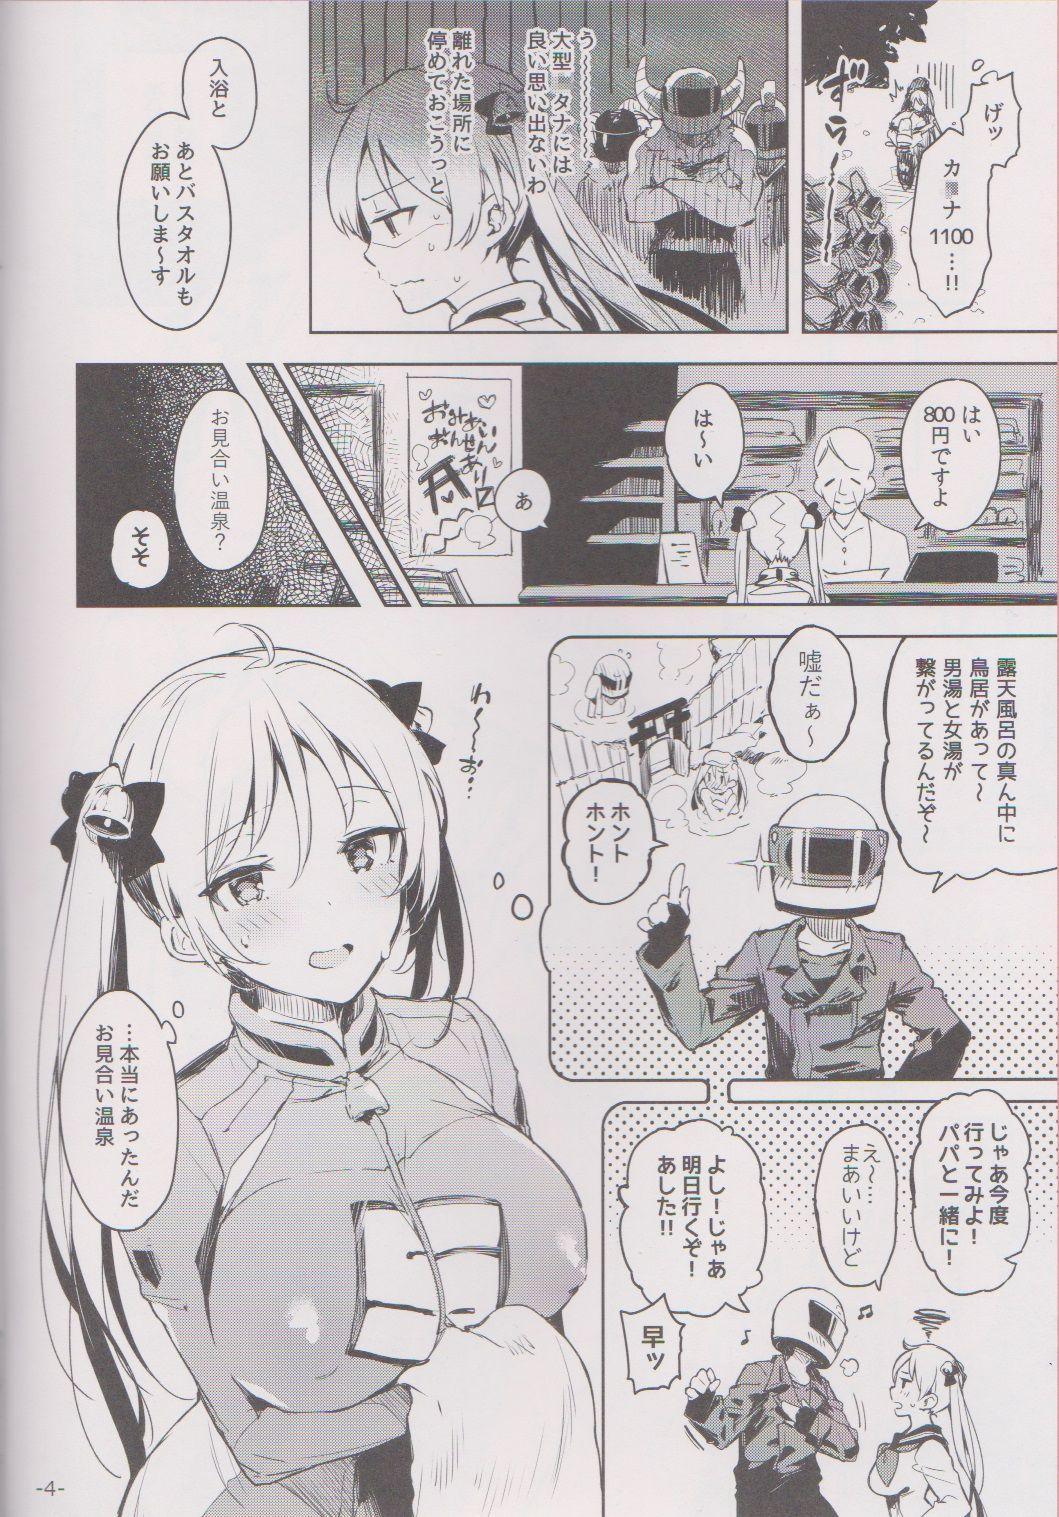 Stranger Kabehame Rin-chan Kikiippatsu!! - Bakuon Petite - Page 3